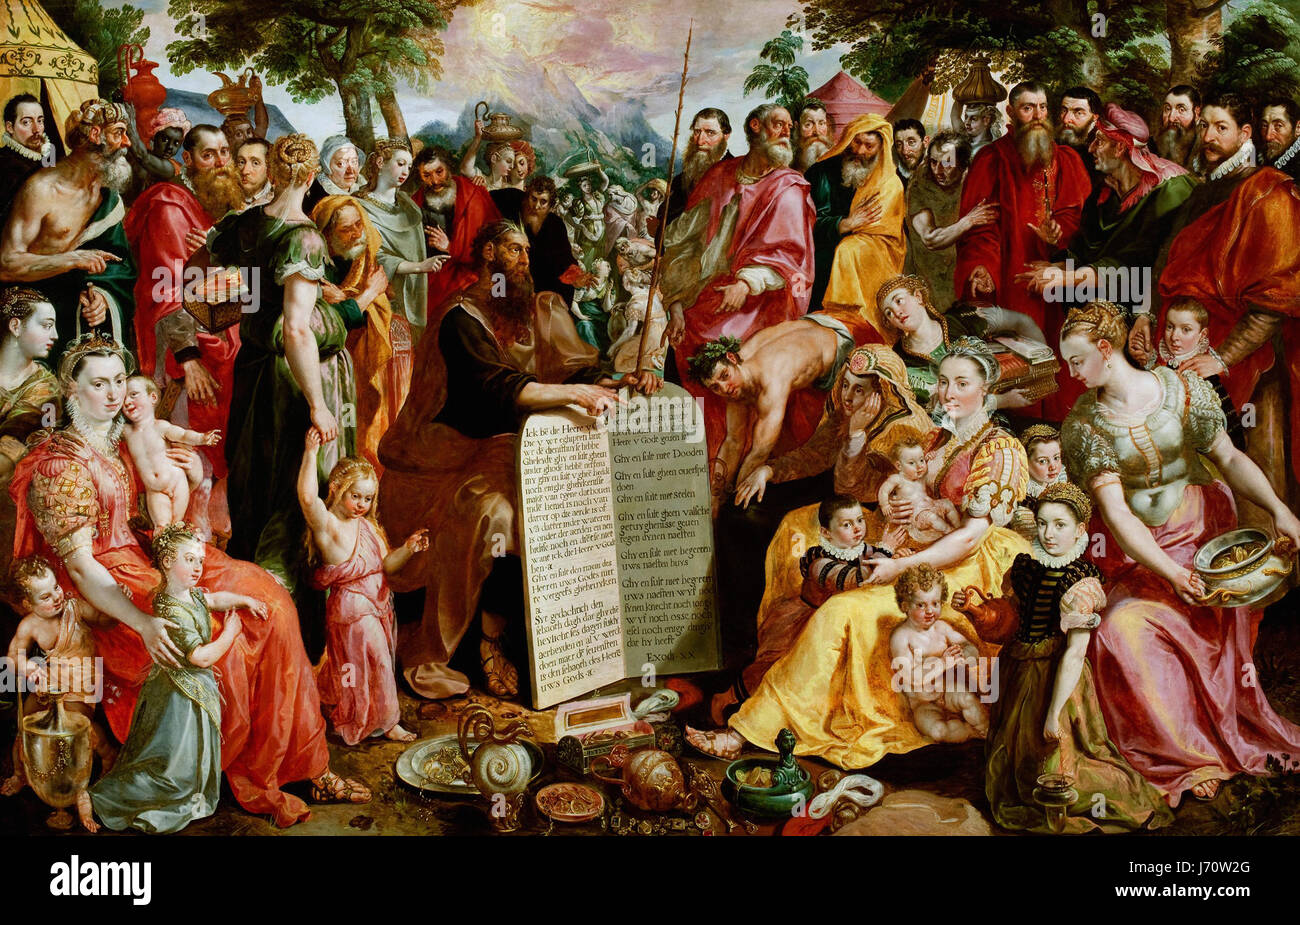 Maerten de Vos Moses mit den Gesetzestafeln zu den Israeliten, mit Porträts von Mitgliedern der Familie Panhuys, ihre Verwandten und Freunde Stockfoto